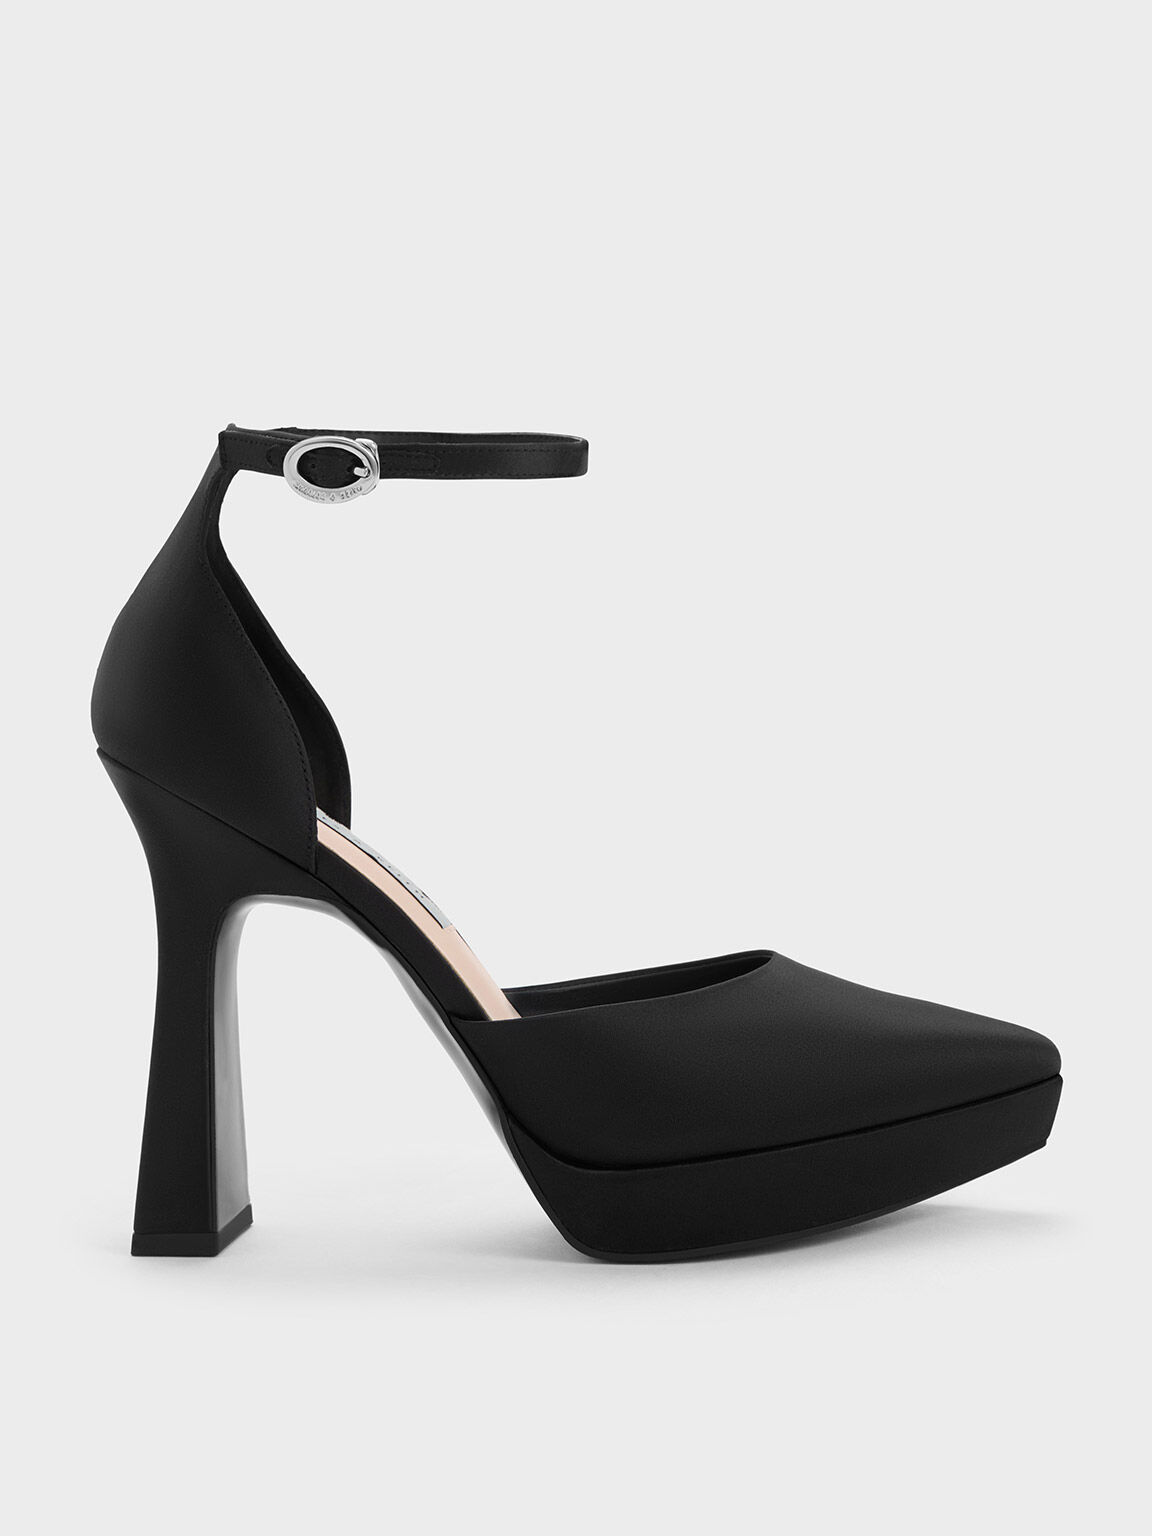 Women's Transparent Heels | CINDERELLA | Buy Court Shoes Online in Pakistan  – Elegancia